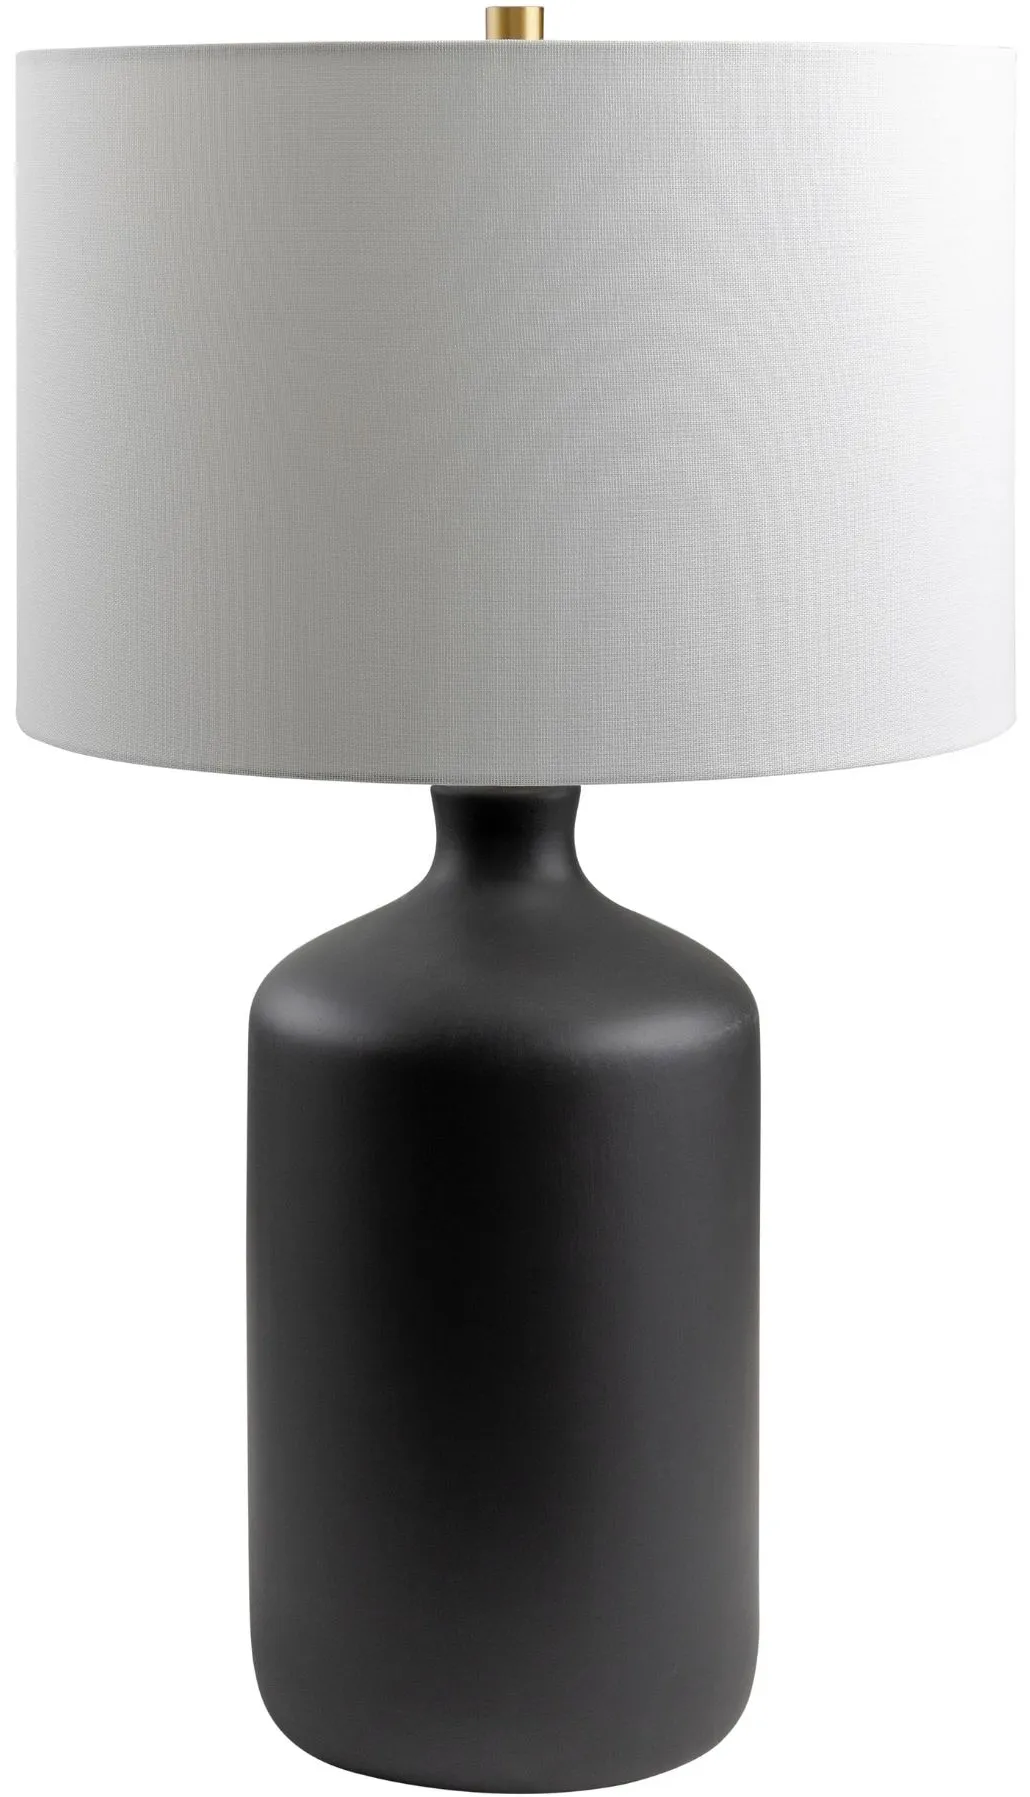 Black Matte Ceramic Table Lamp 27"H